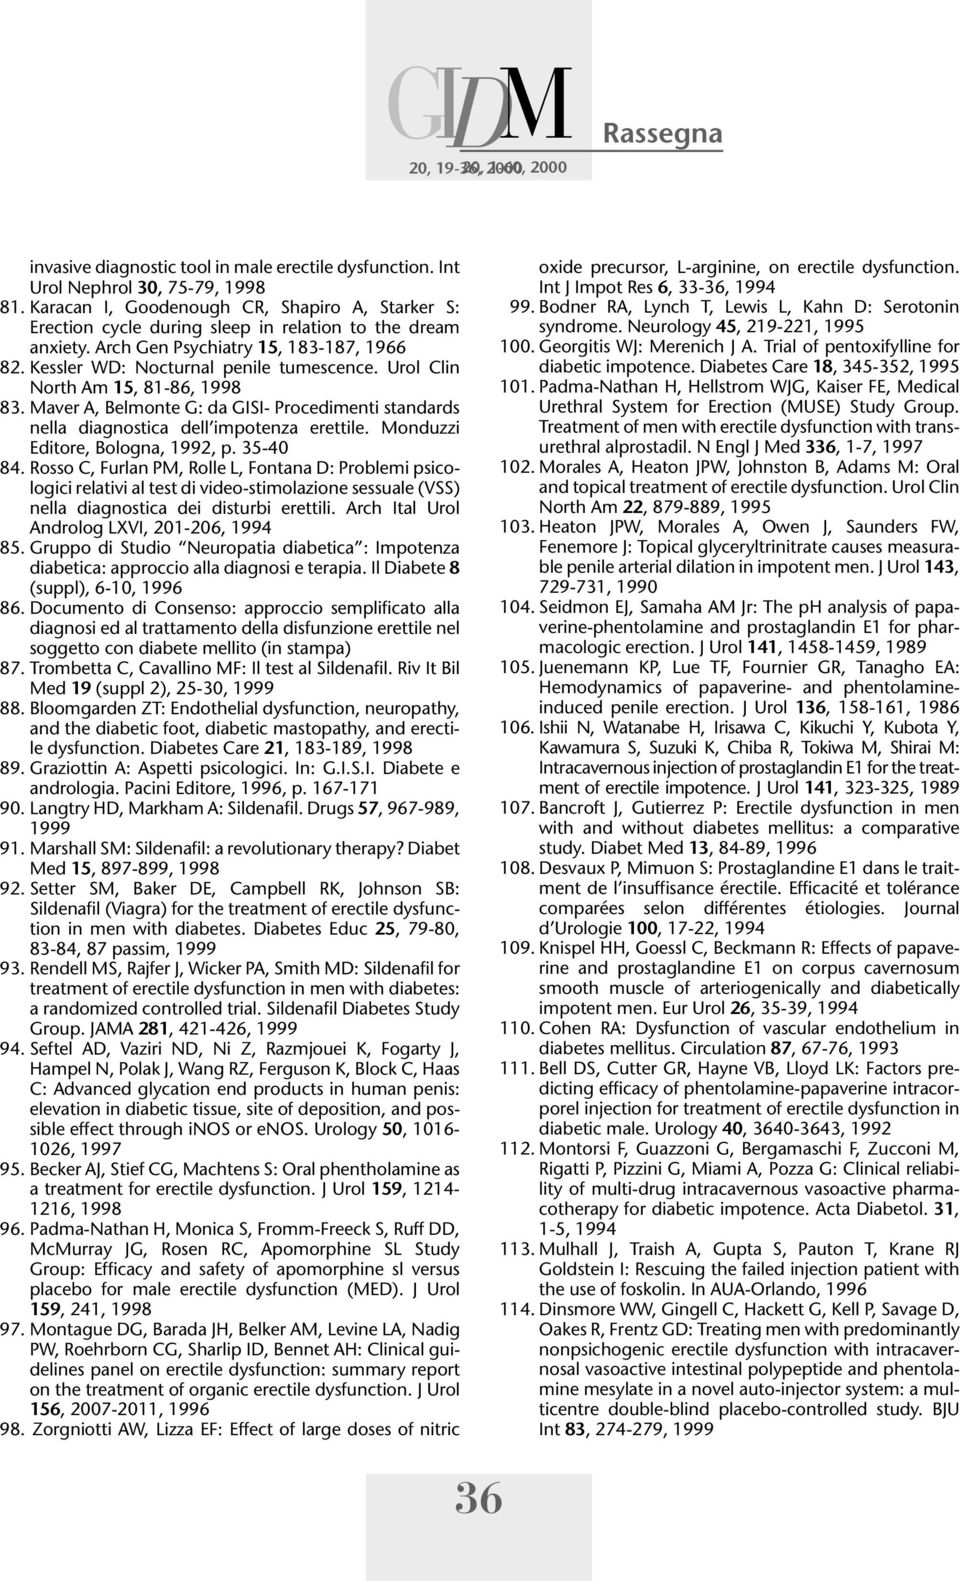 Urol Clin North Am 15, 81-86, 1998 83. Maver A, Belmonte G: da GISI- Procedimenti standards nella diagnostica dell impotenza erettile. Monduzzi Editore, Bologna, 1992, p. 35-40 84.